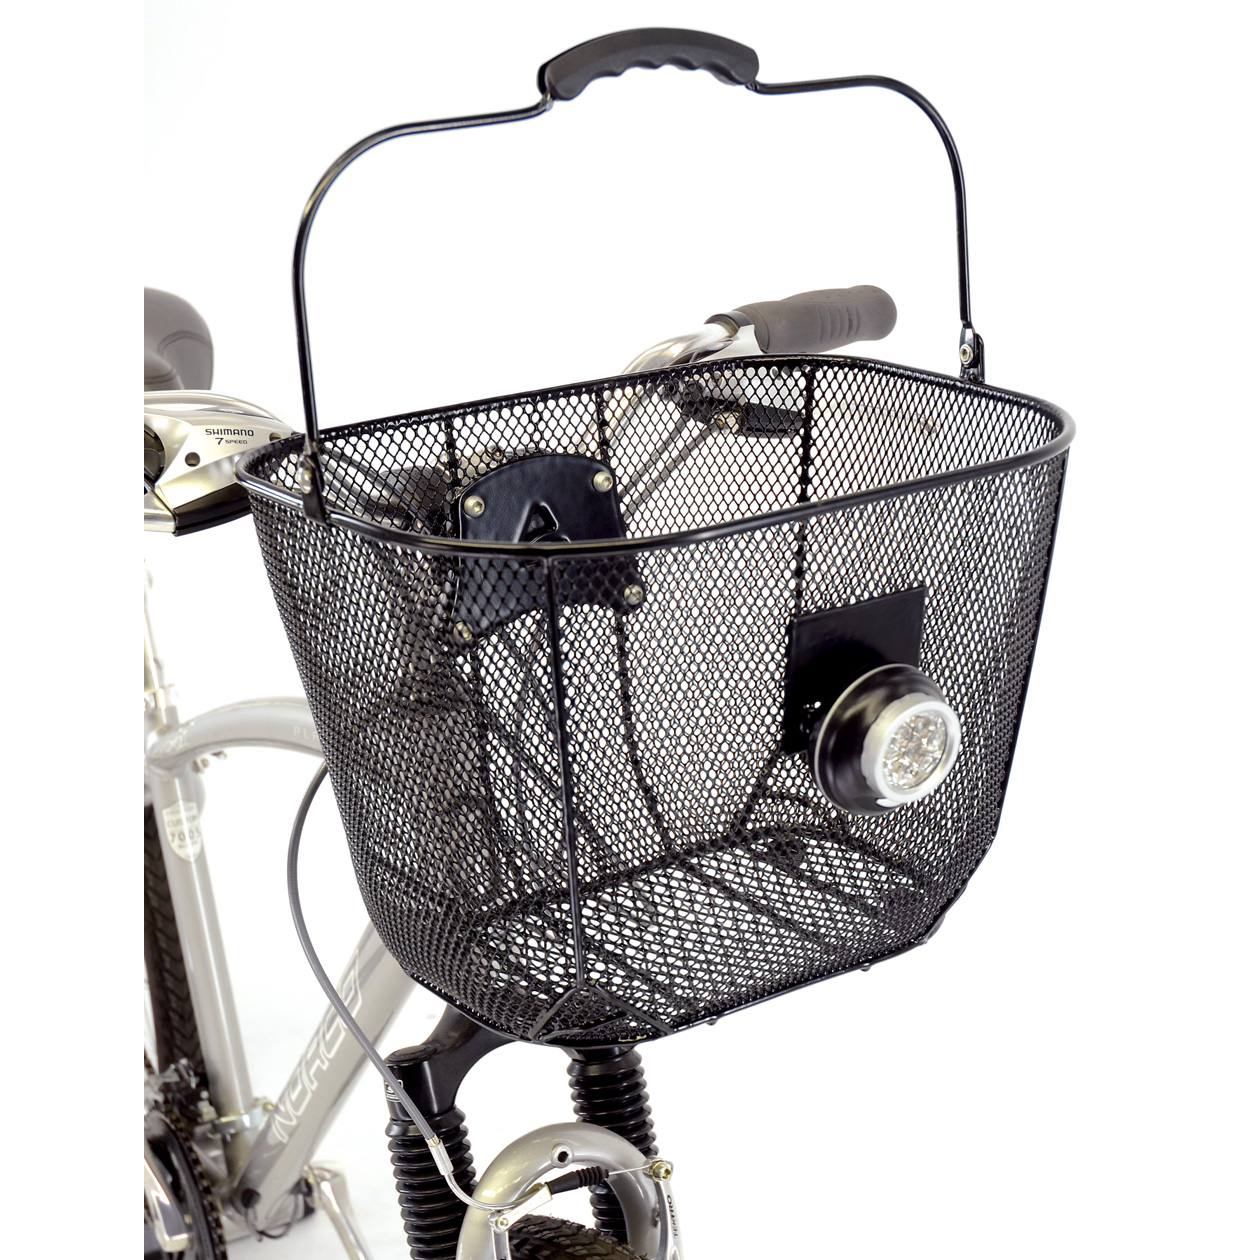 a bike with a basket